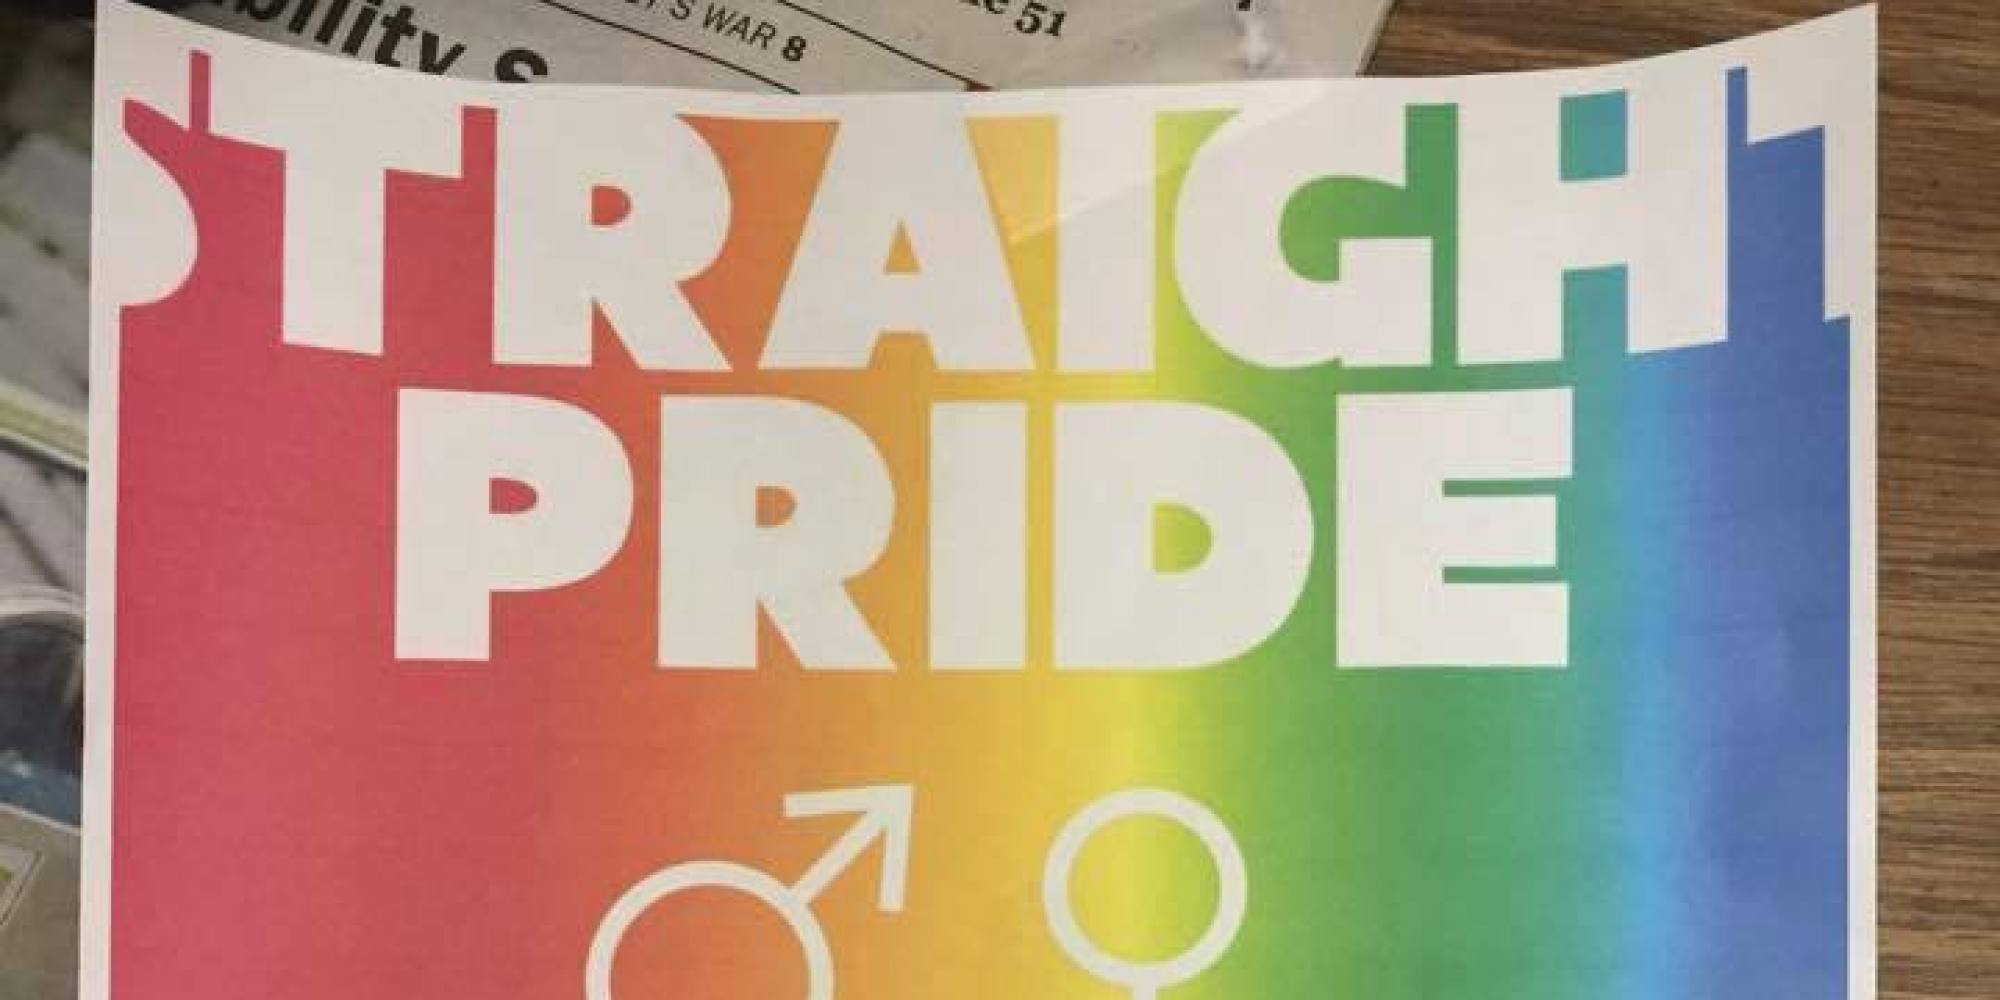 Otro año más, los homófobos exigen un Día del Orgullo Hetero